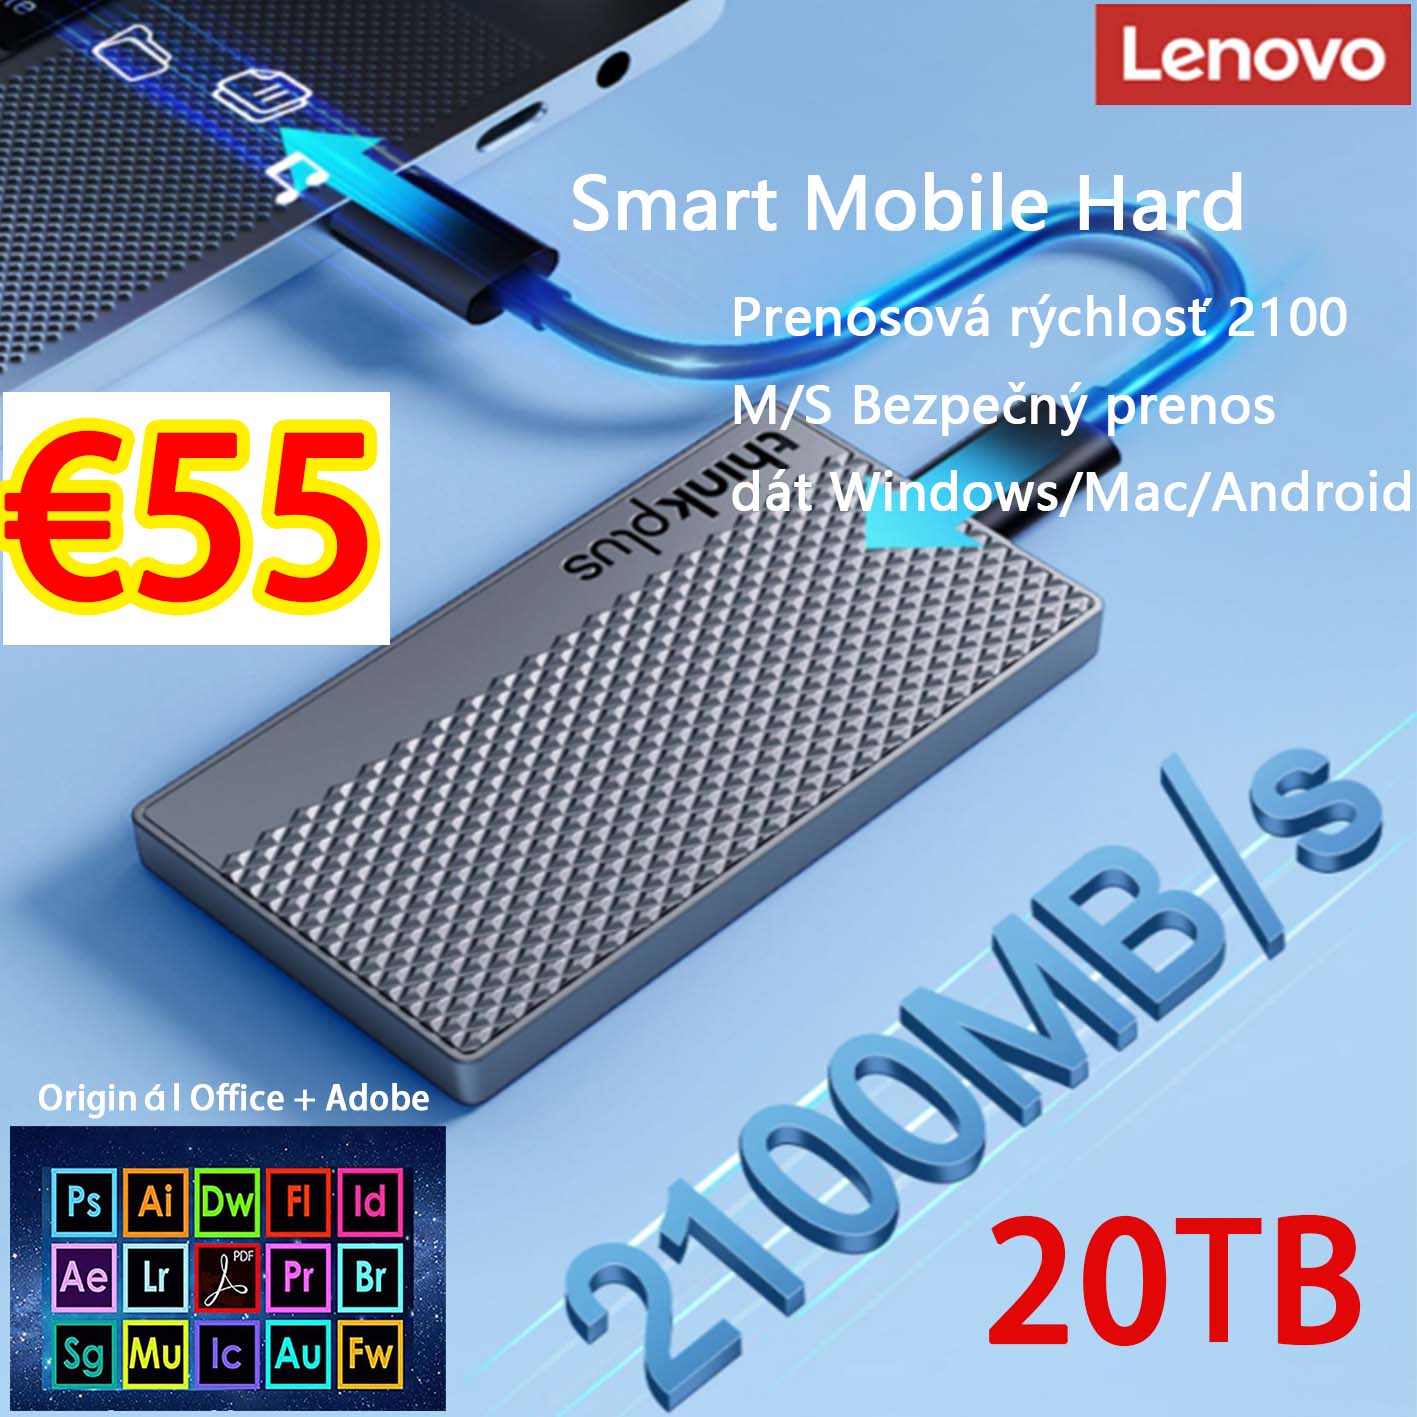 [Lenovo] 20TB inteligentný mobilný pevný disk